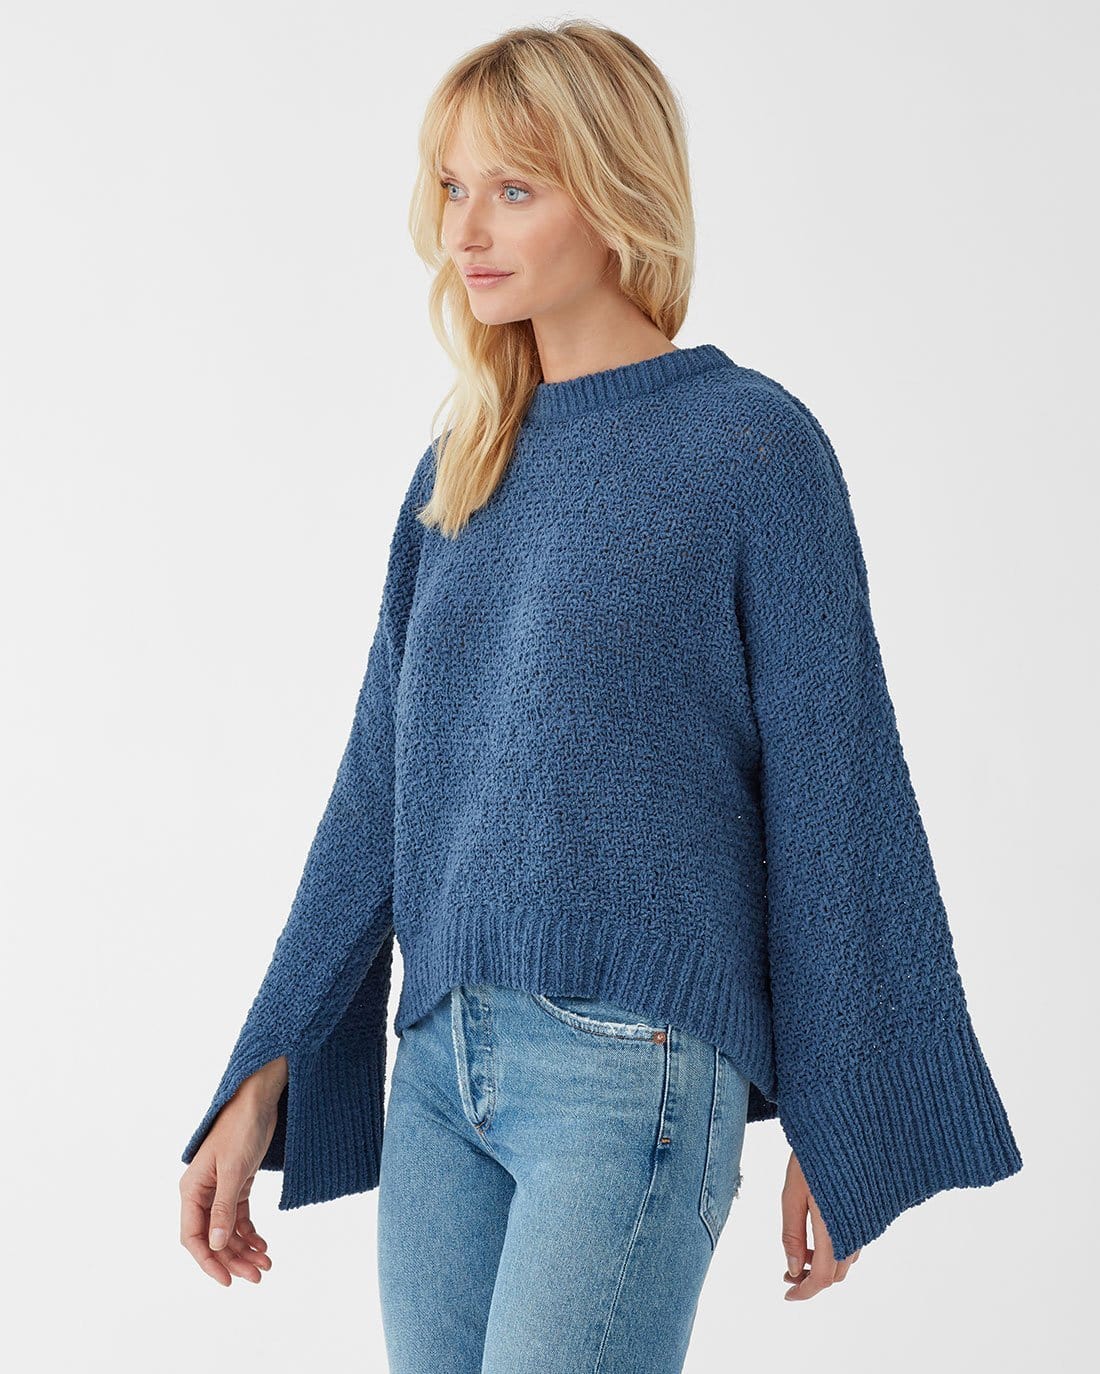 Splendid Bowie Sweater in Dusty Blue 